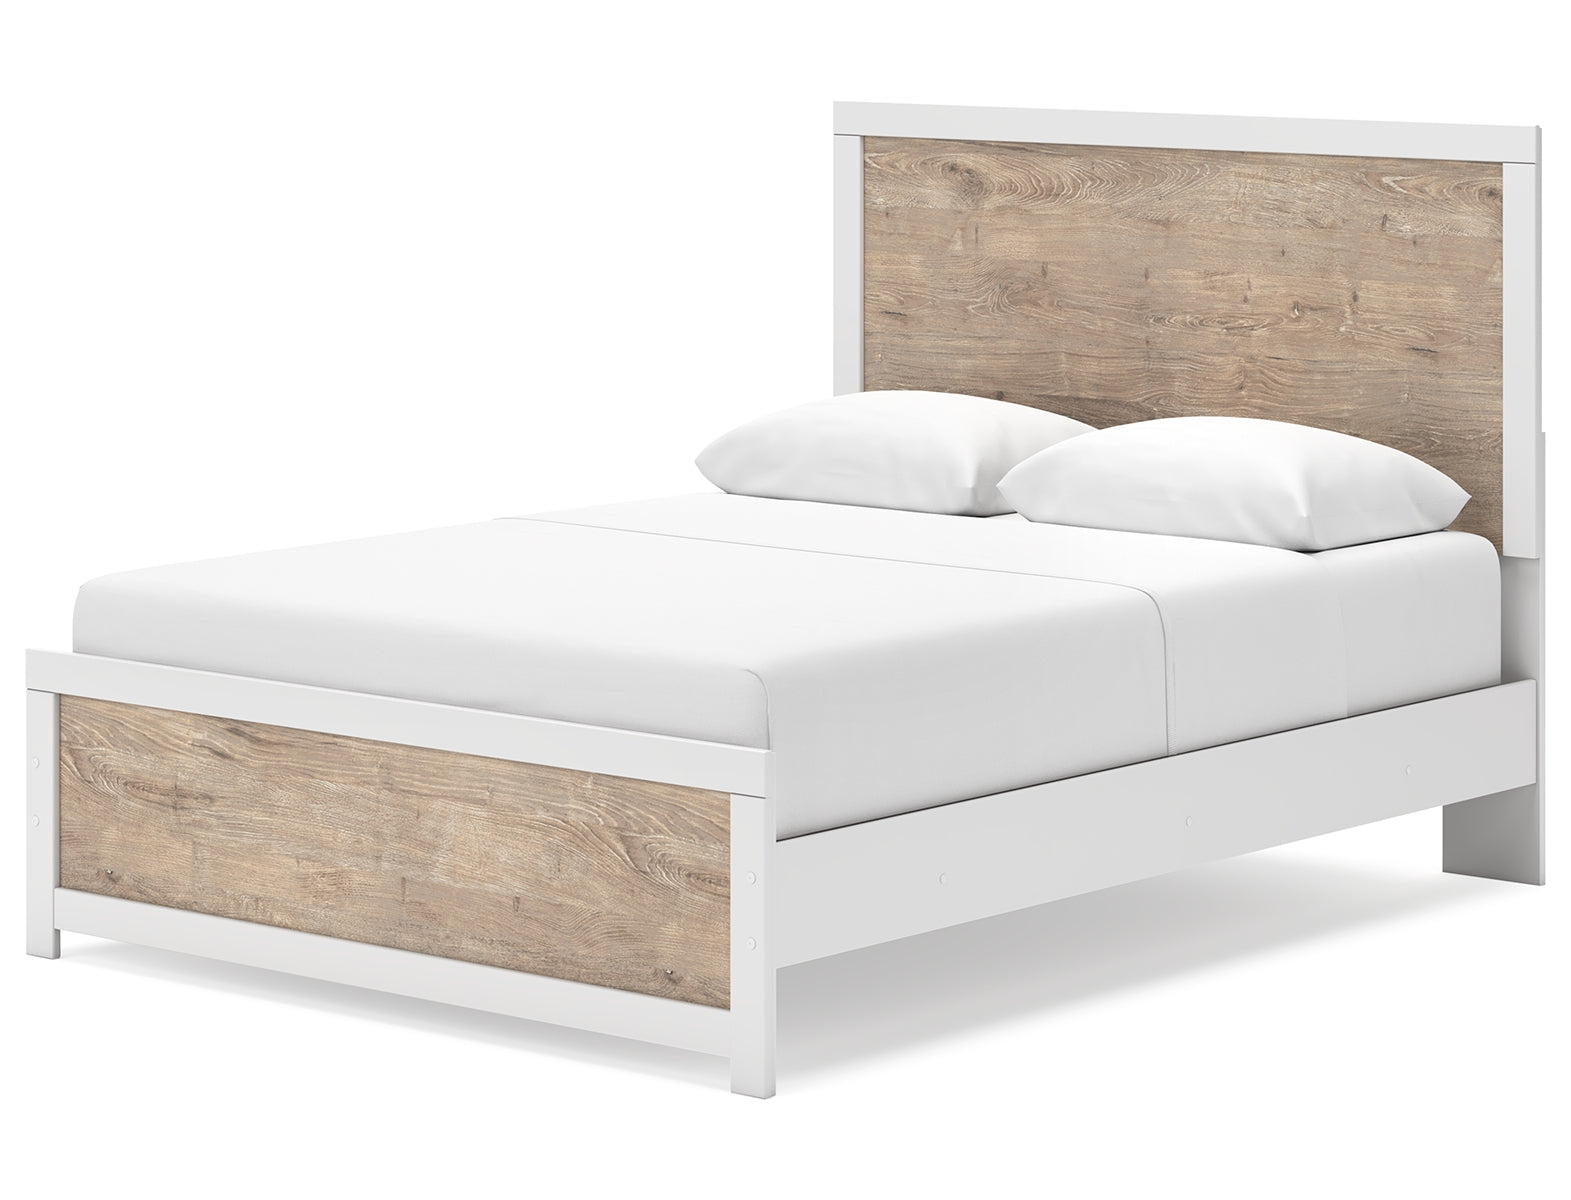 Charbitt Queen Panel Bed with Dresser